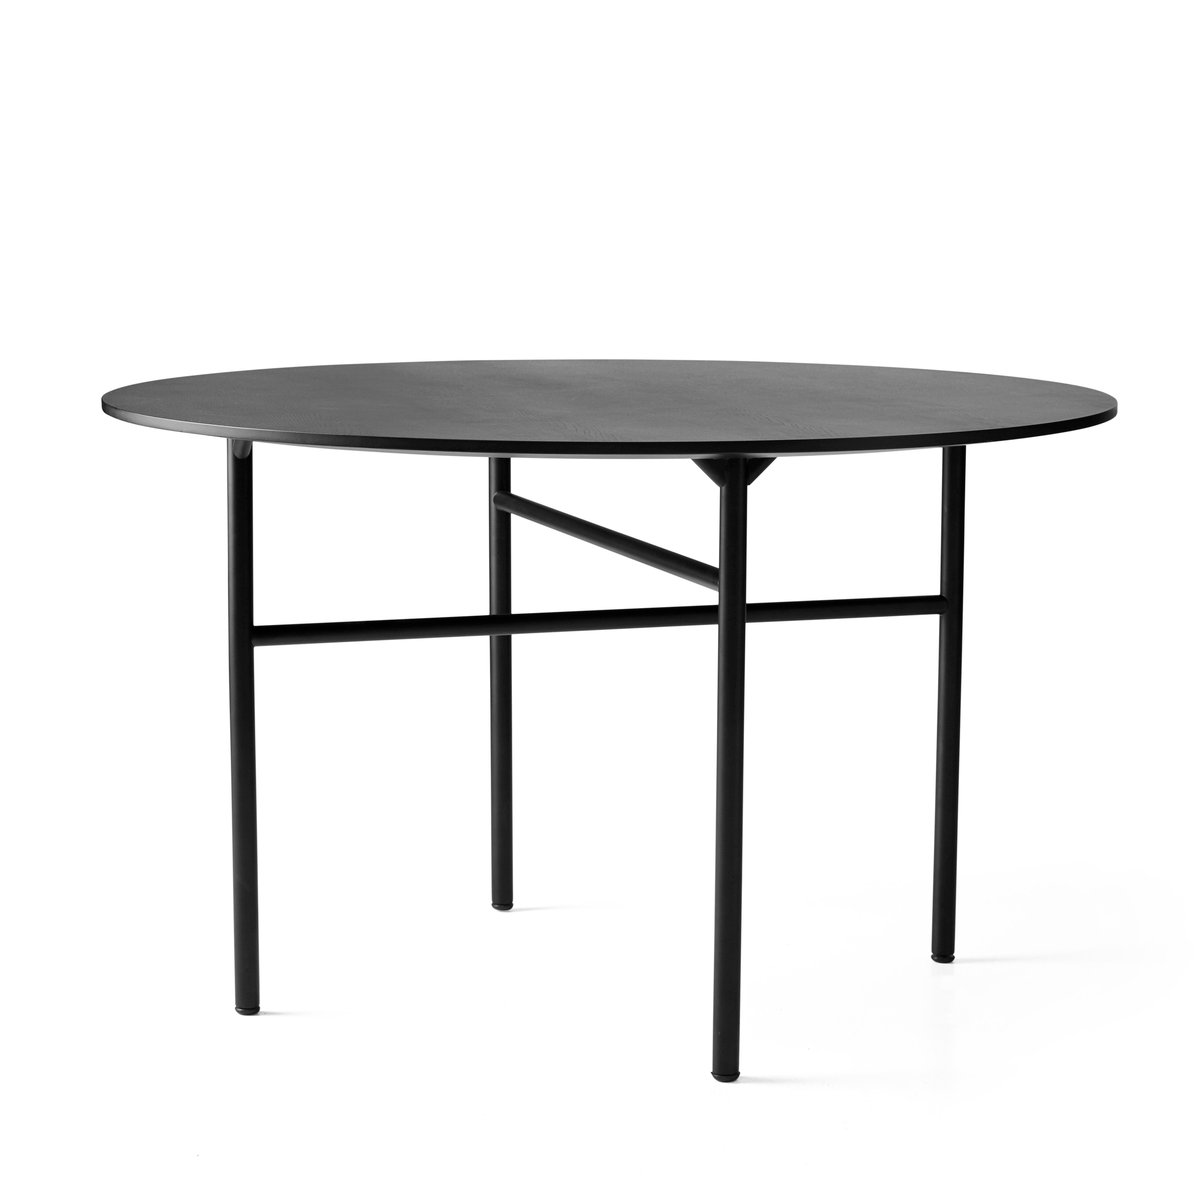 MENU Snaregade pöytä pyöristää musta Ø 120 cm